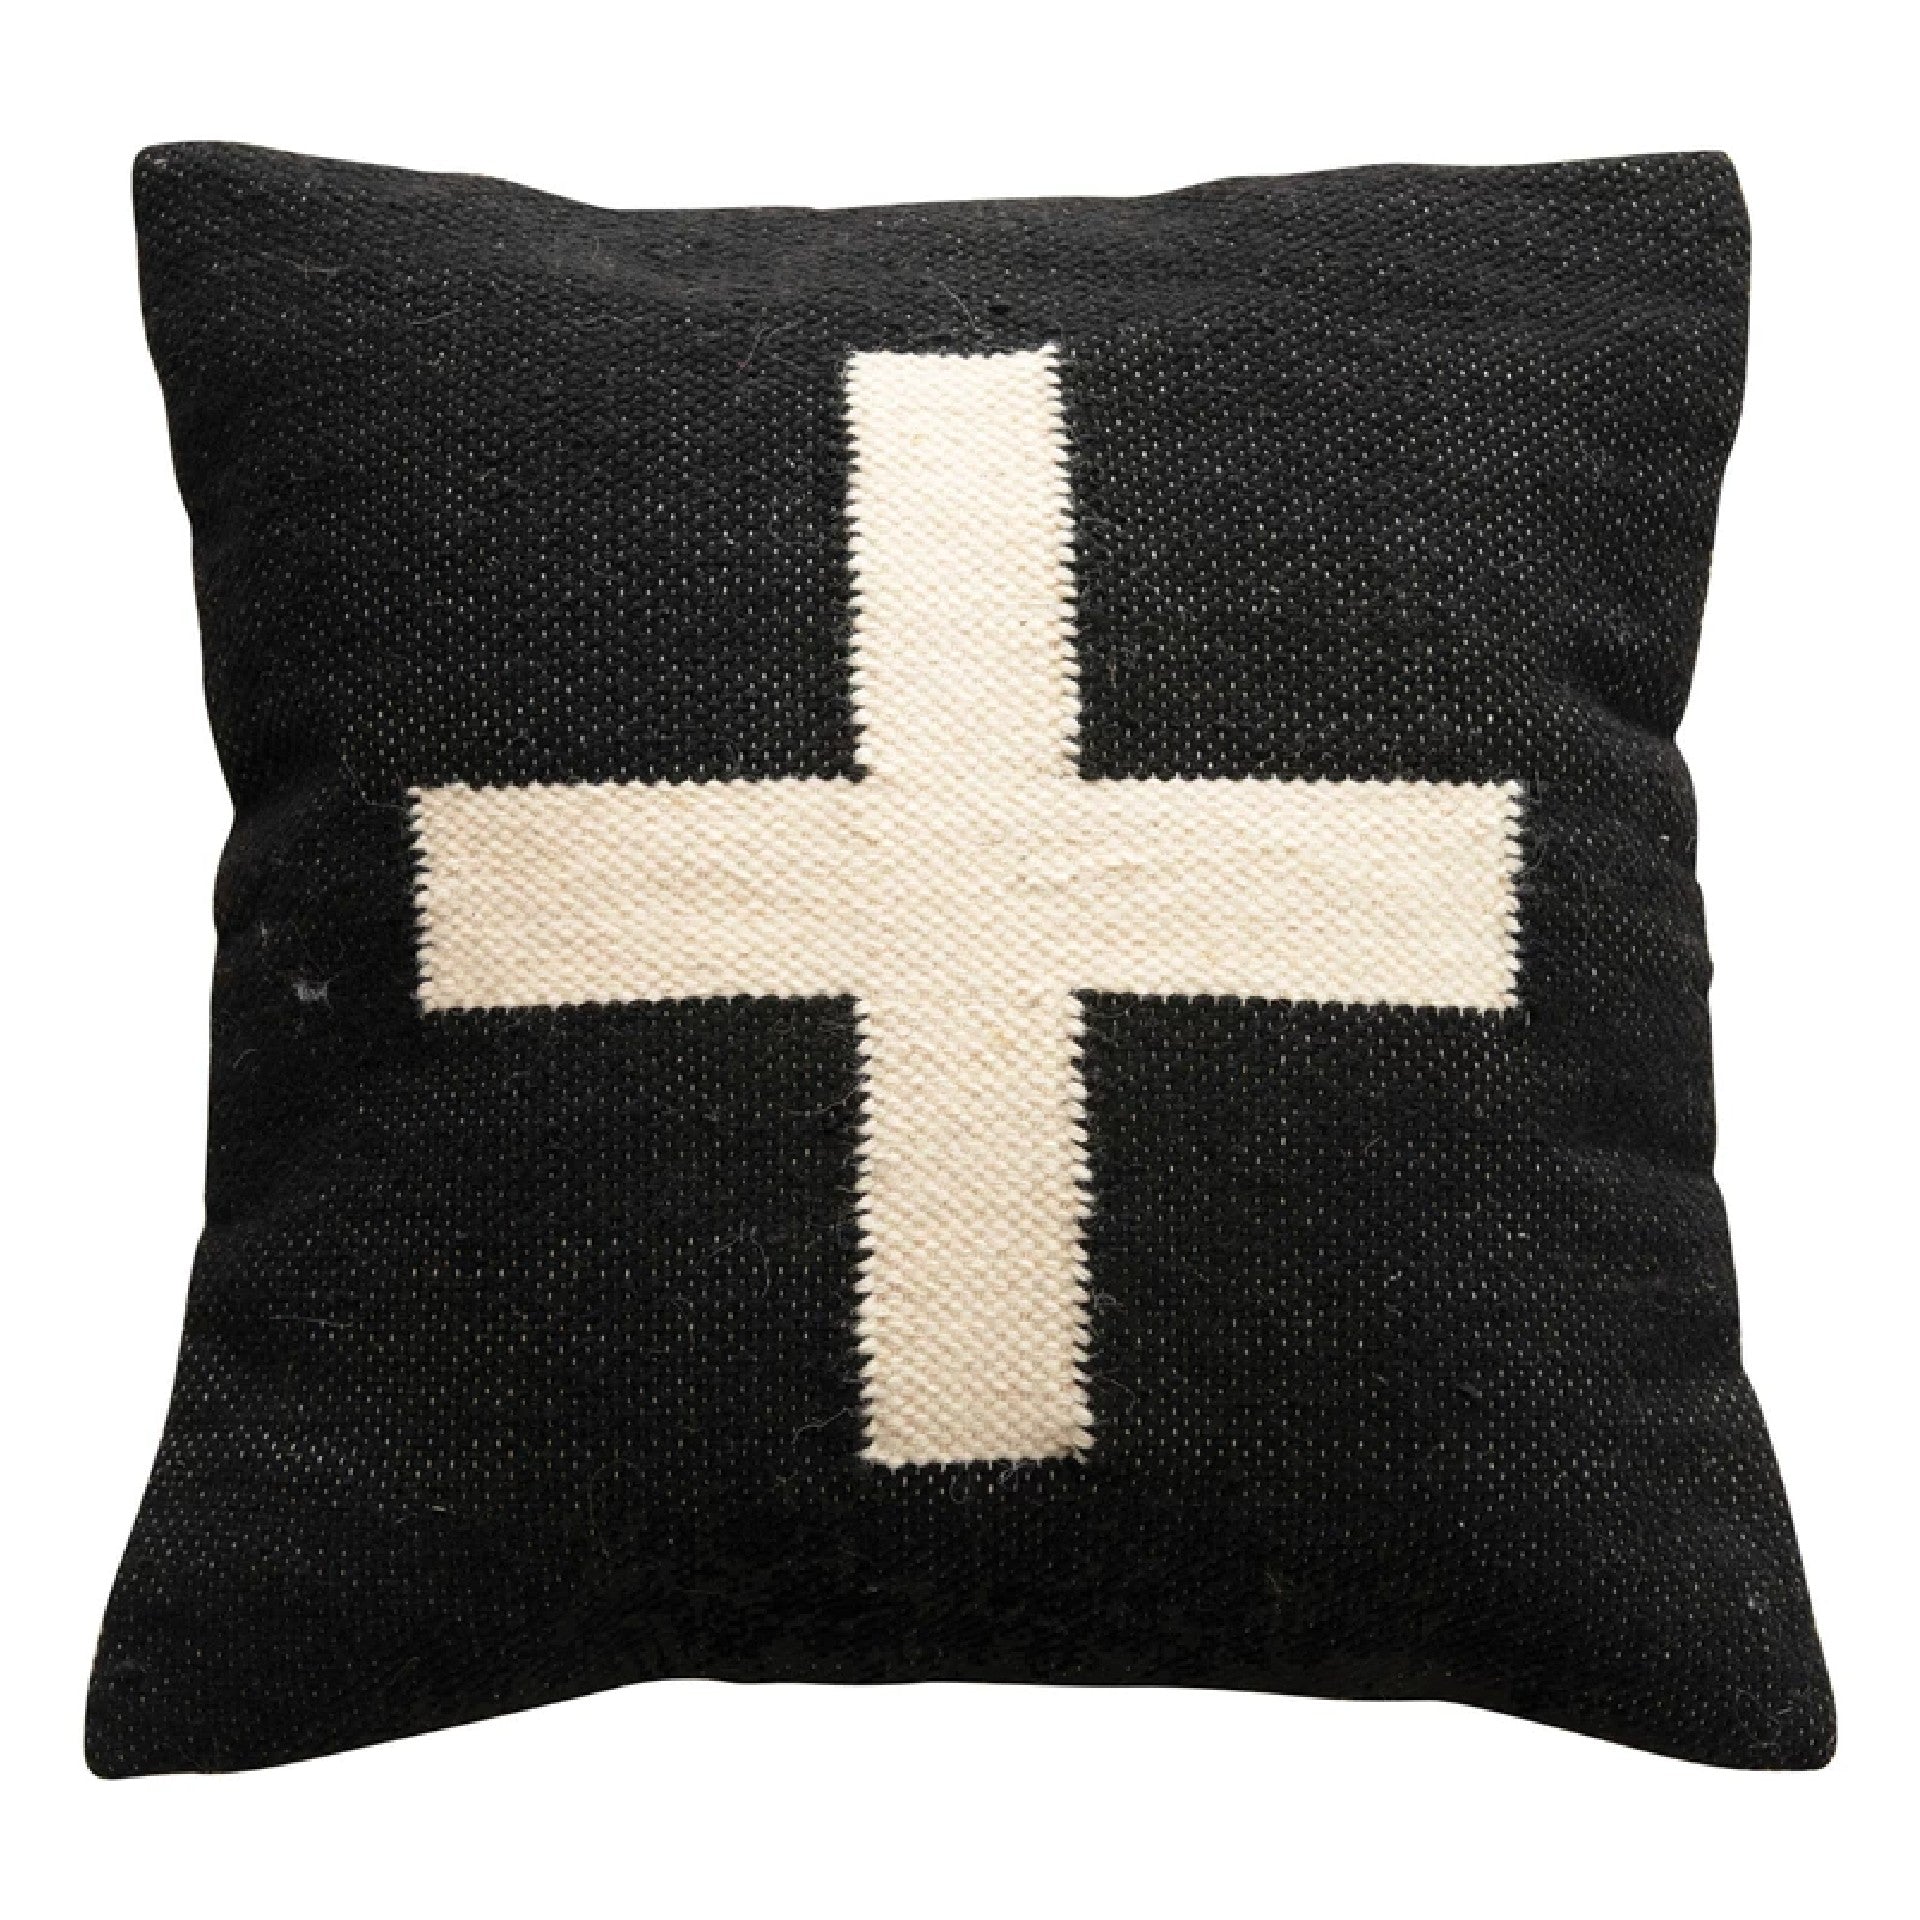 Swiss Cross Pillow